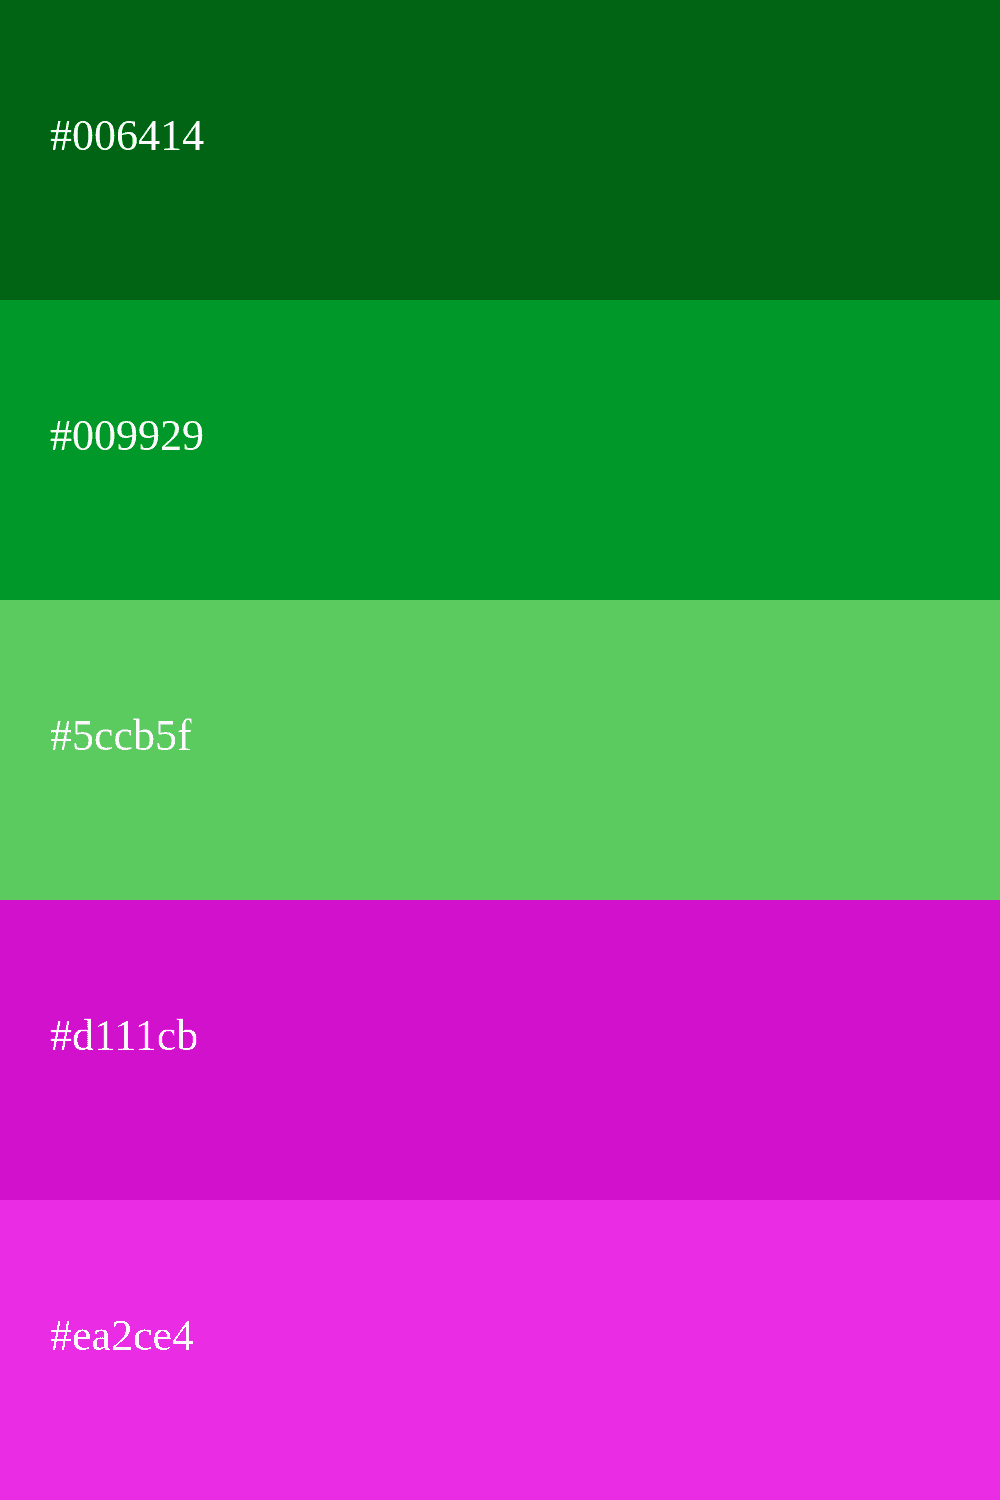 couleur verte et violette